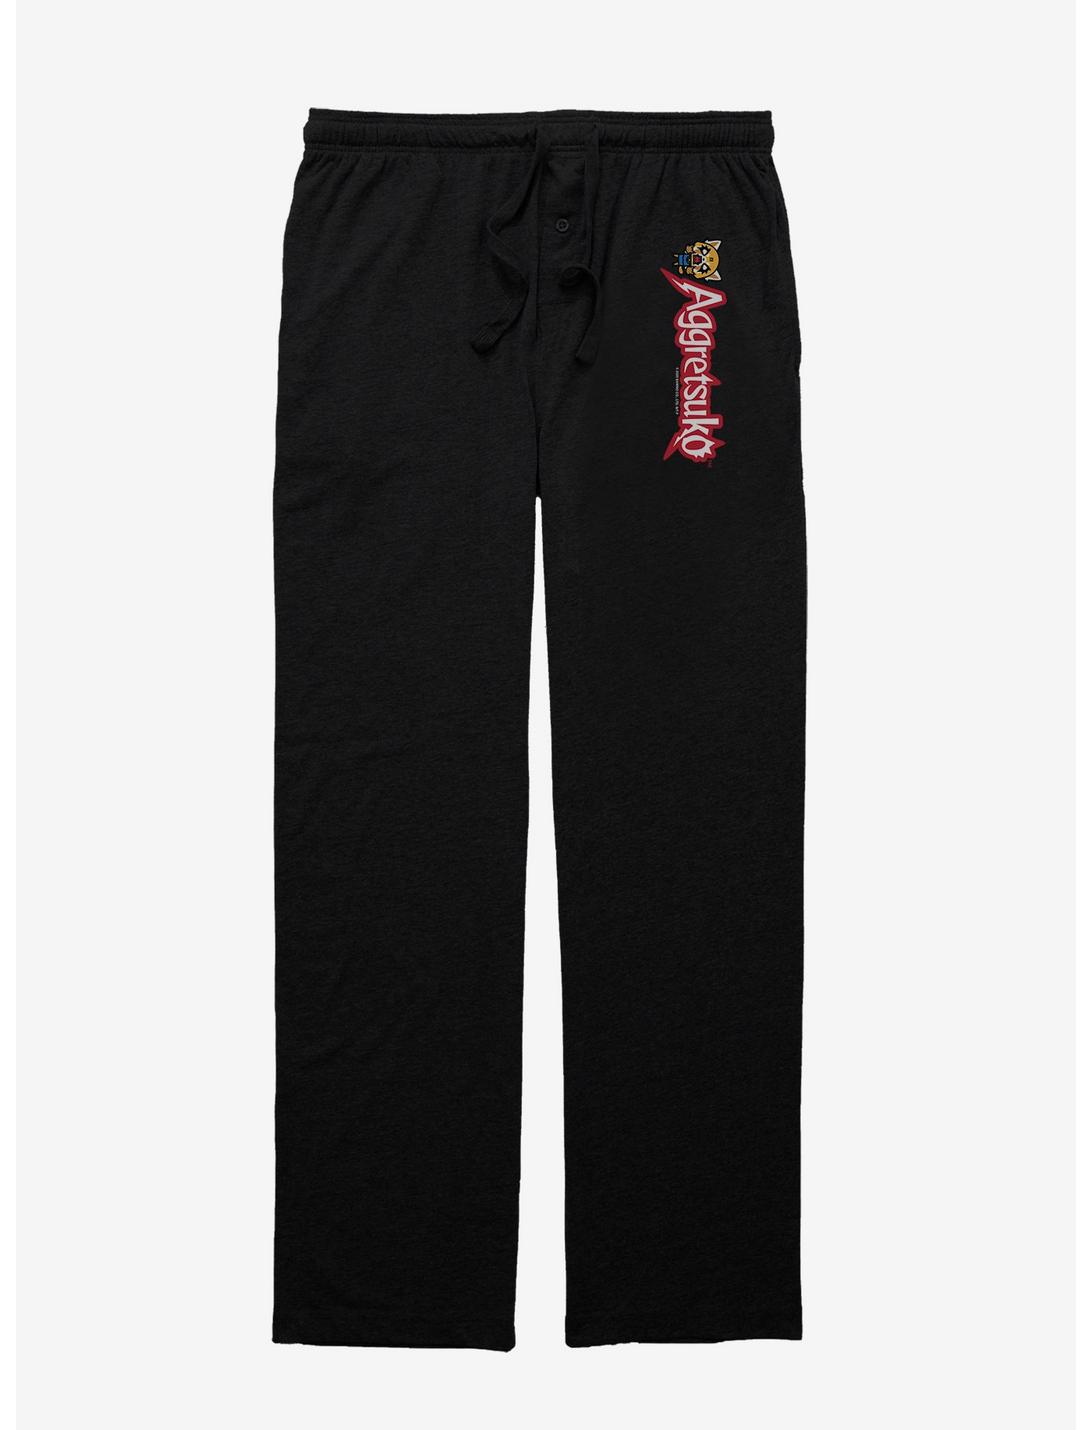 Aggretsuko Rock Pose Pajama Pants, BLACK, hi-res